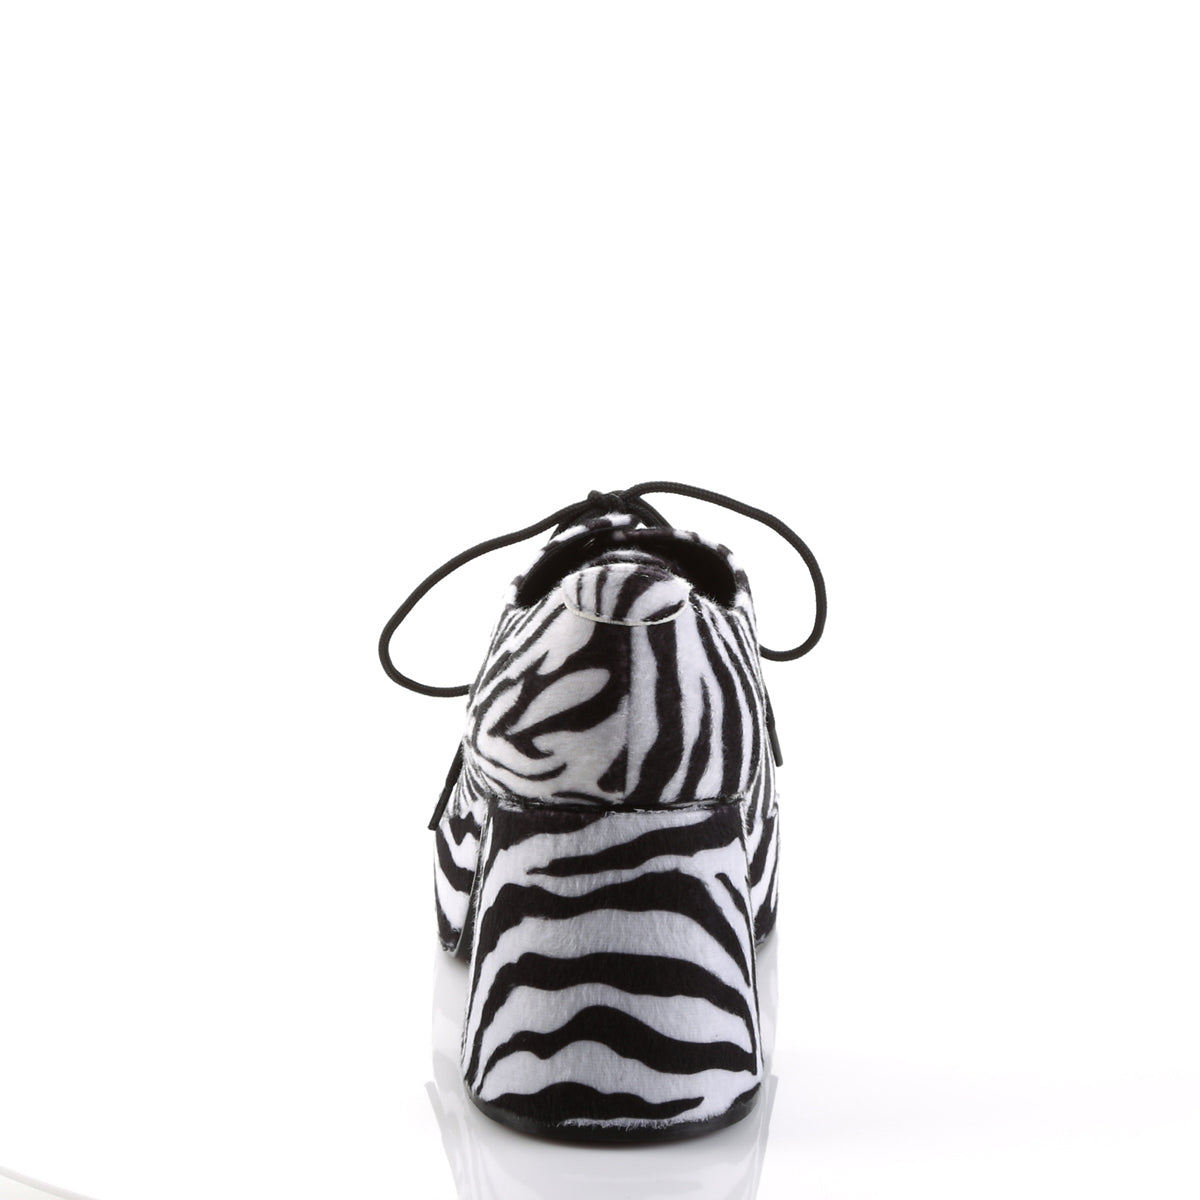 JAZZ-02 Zebra Fur Funtasma